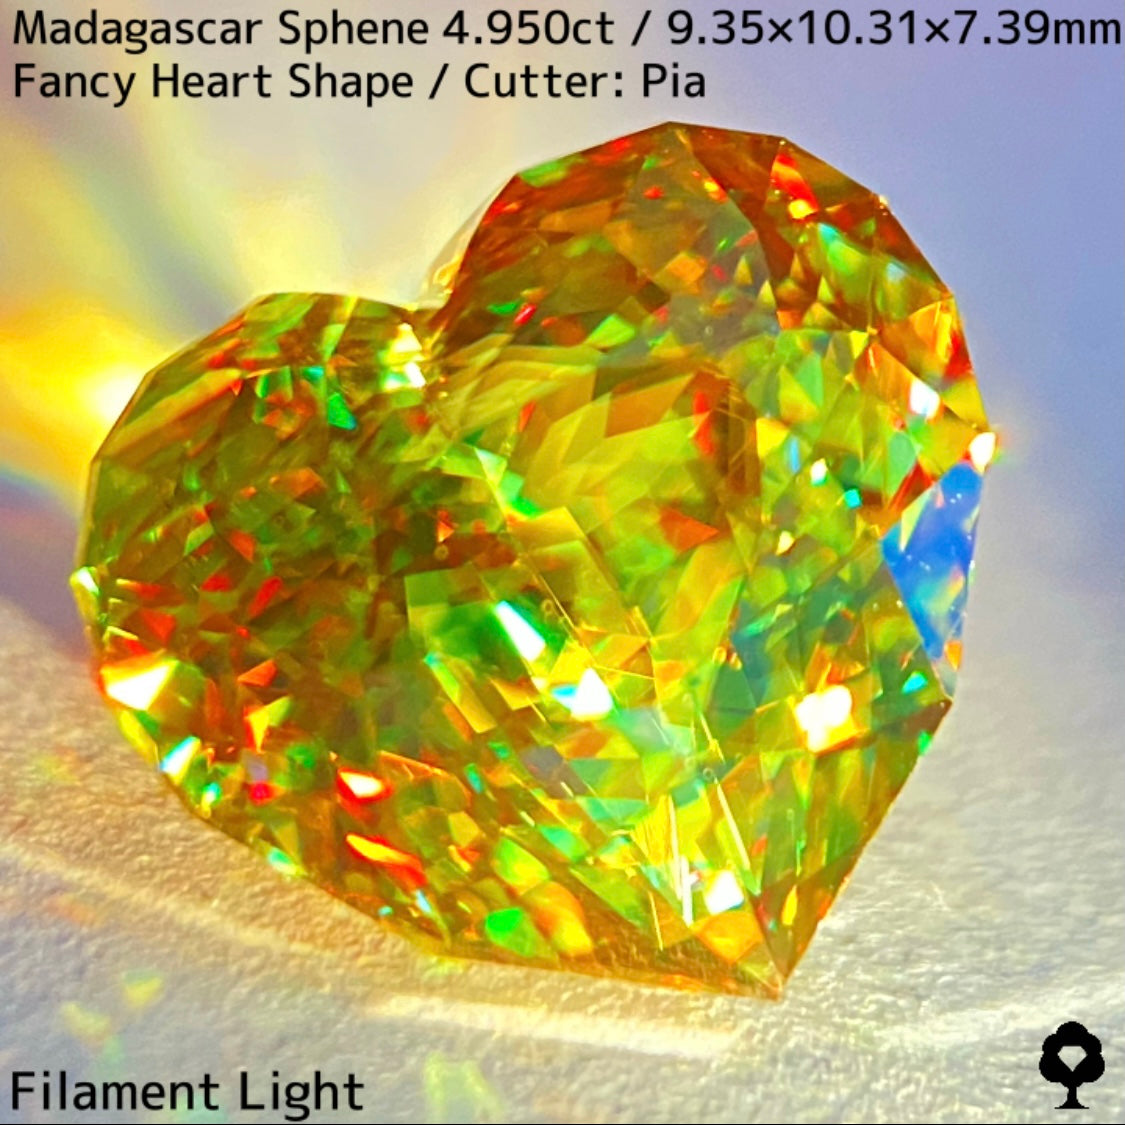 最高に煌めく超美結晶が完璧なファンシーハートシェイプに★マダガスカル産スフェーン4.950ct